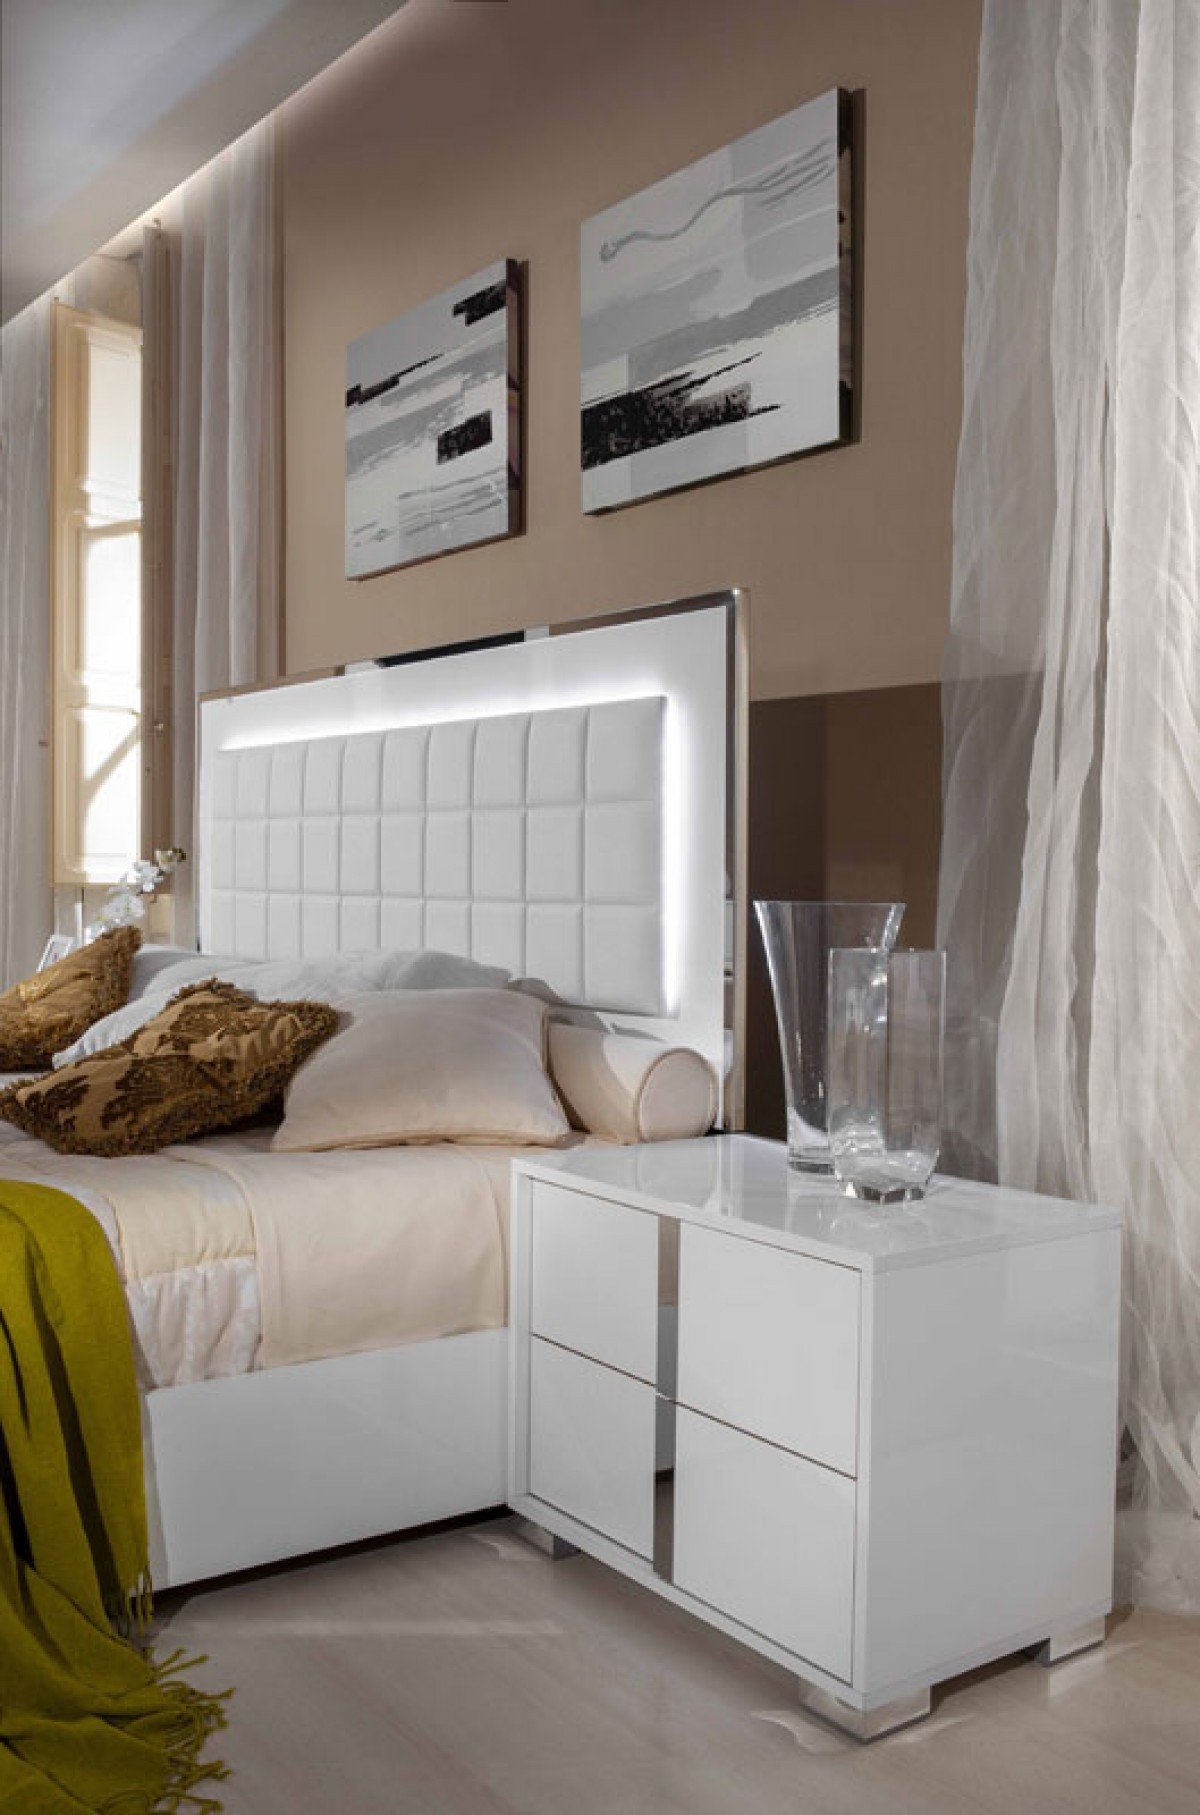 White Lacquer Bedroom Set Best Of Unique King Futon San Jose Reviews Pics — Beautiful